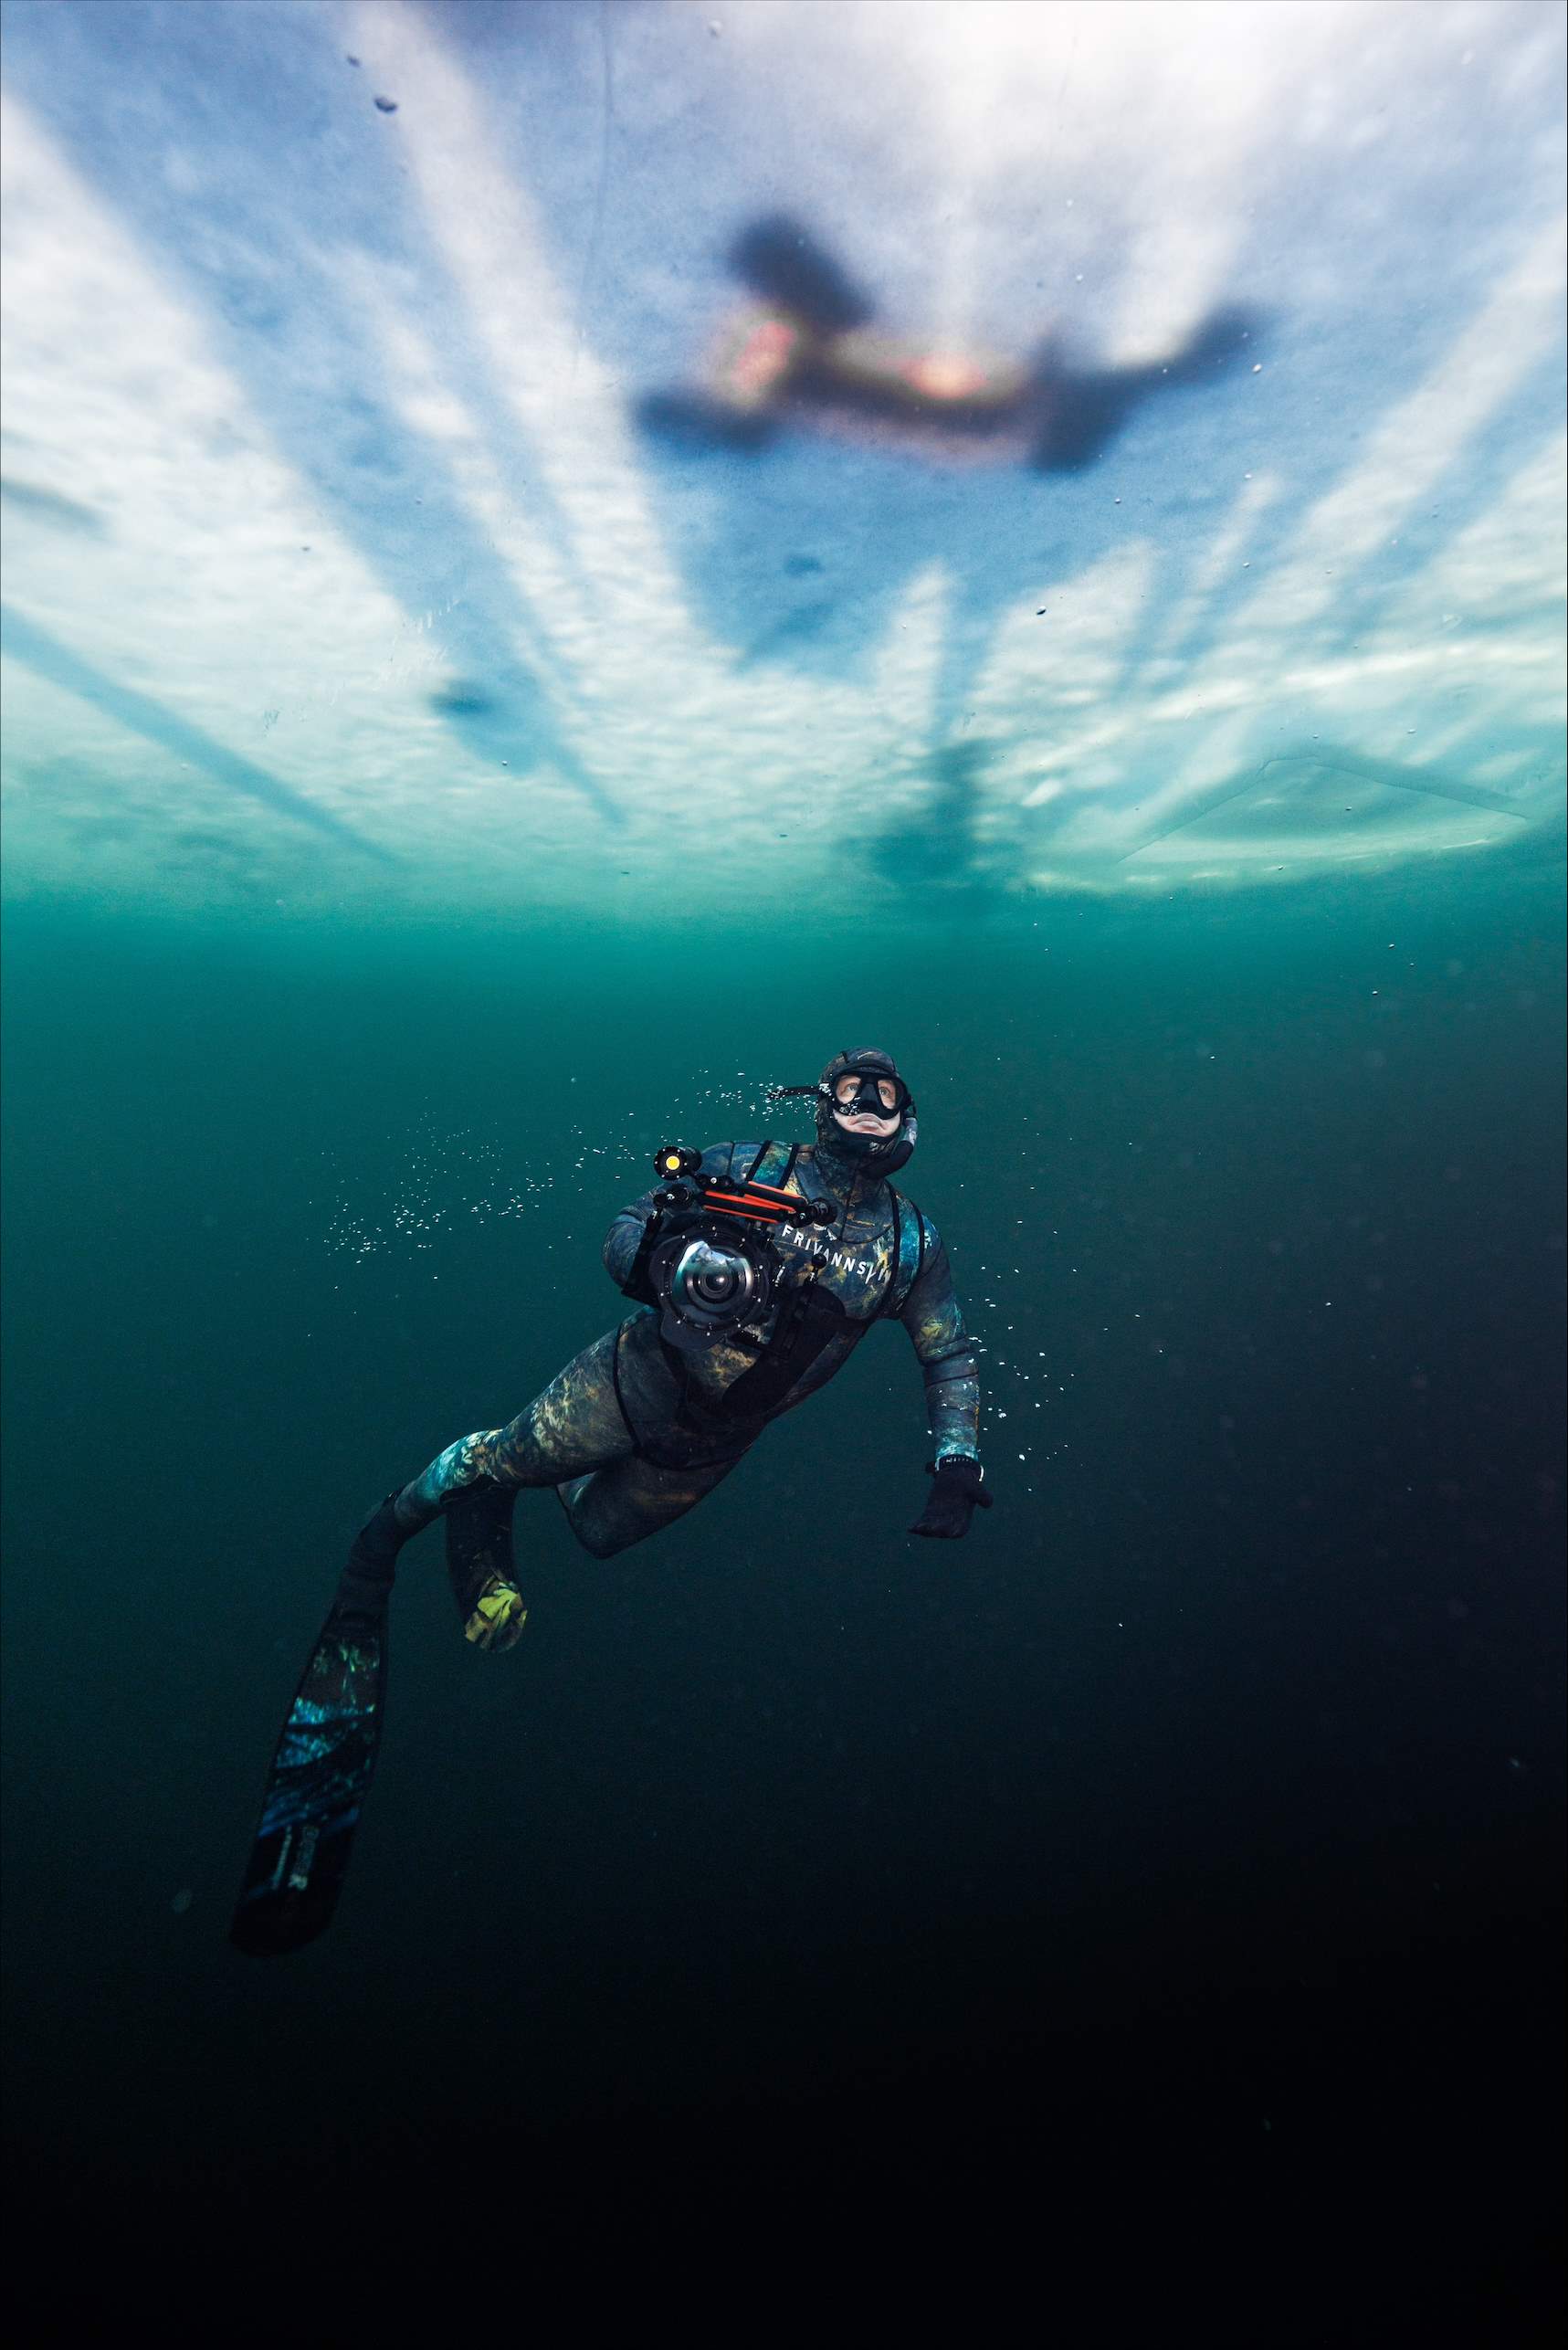 Foto: Aleksander Nordahl / @freedivingnorway